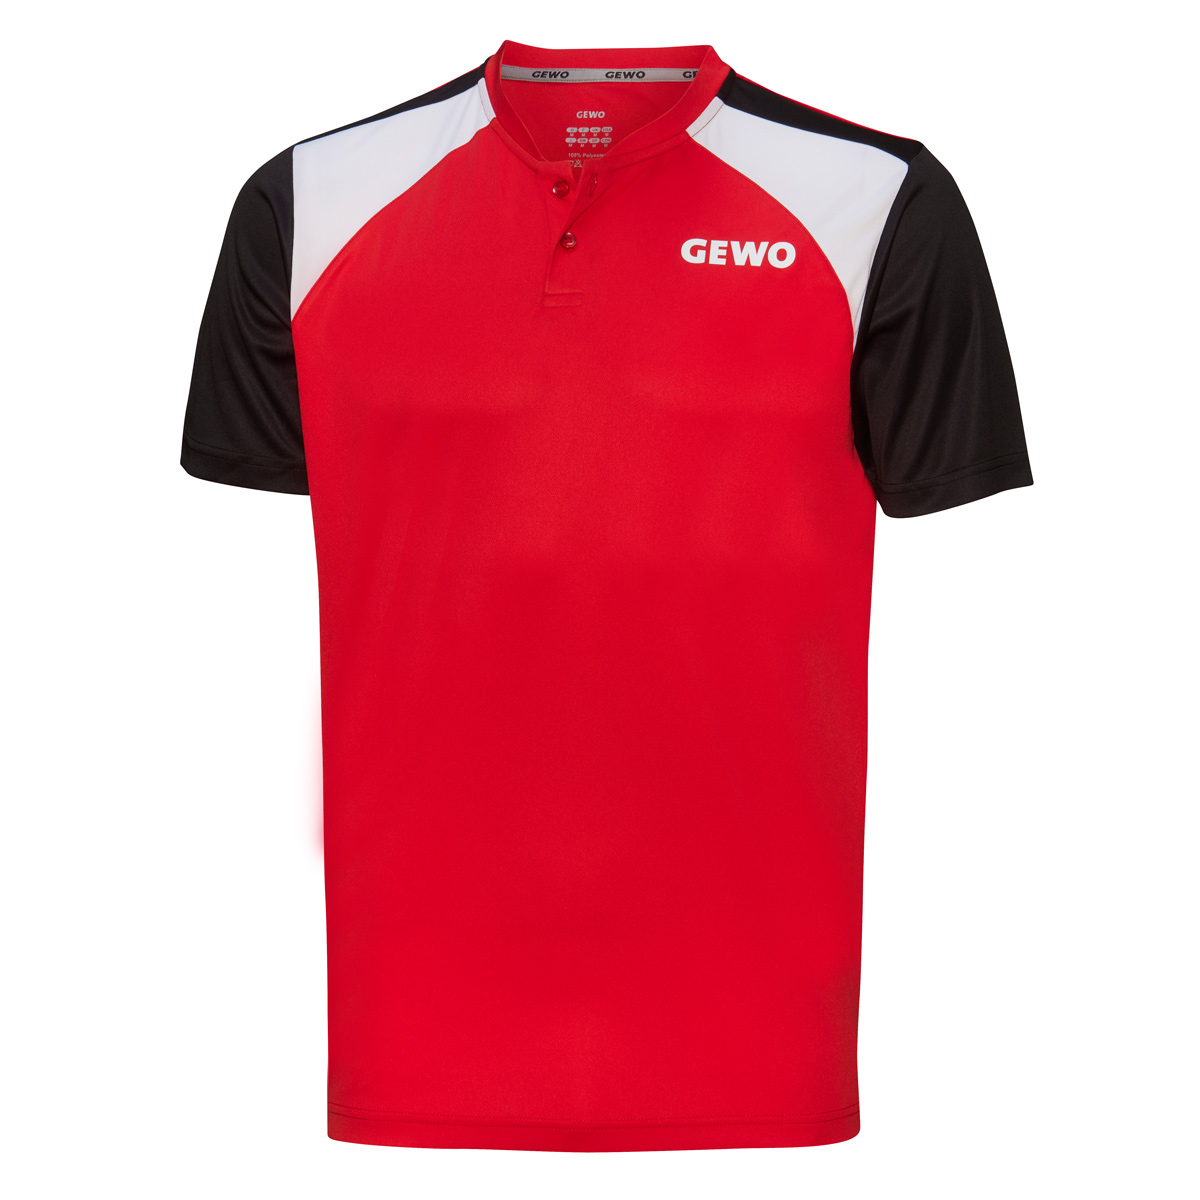 GEWO Shirt Zamora rot/schwarz XXXXS